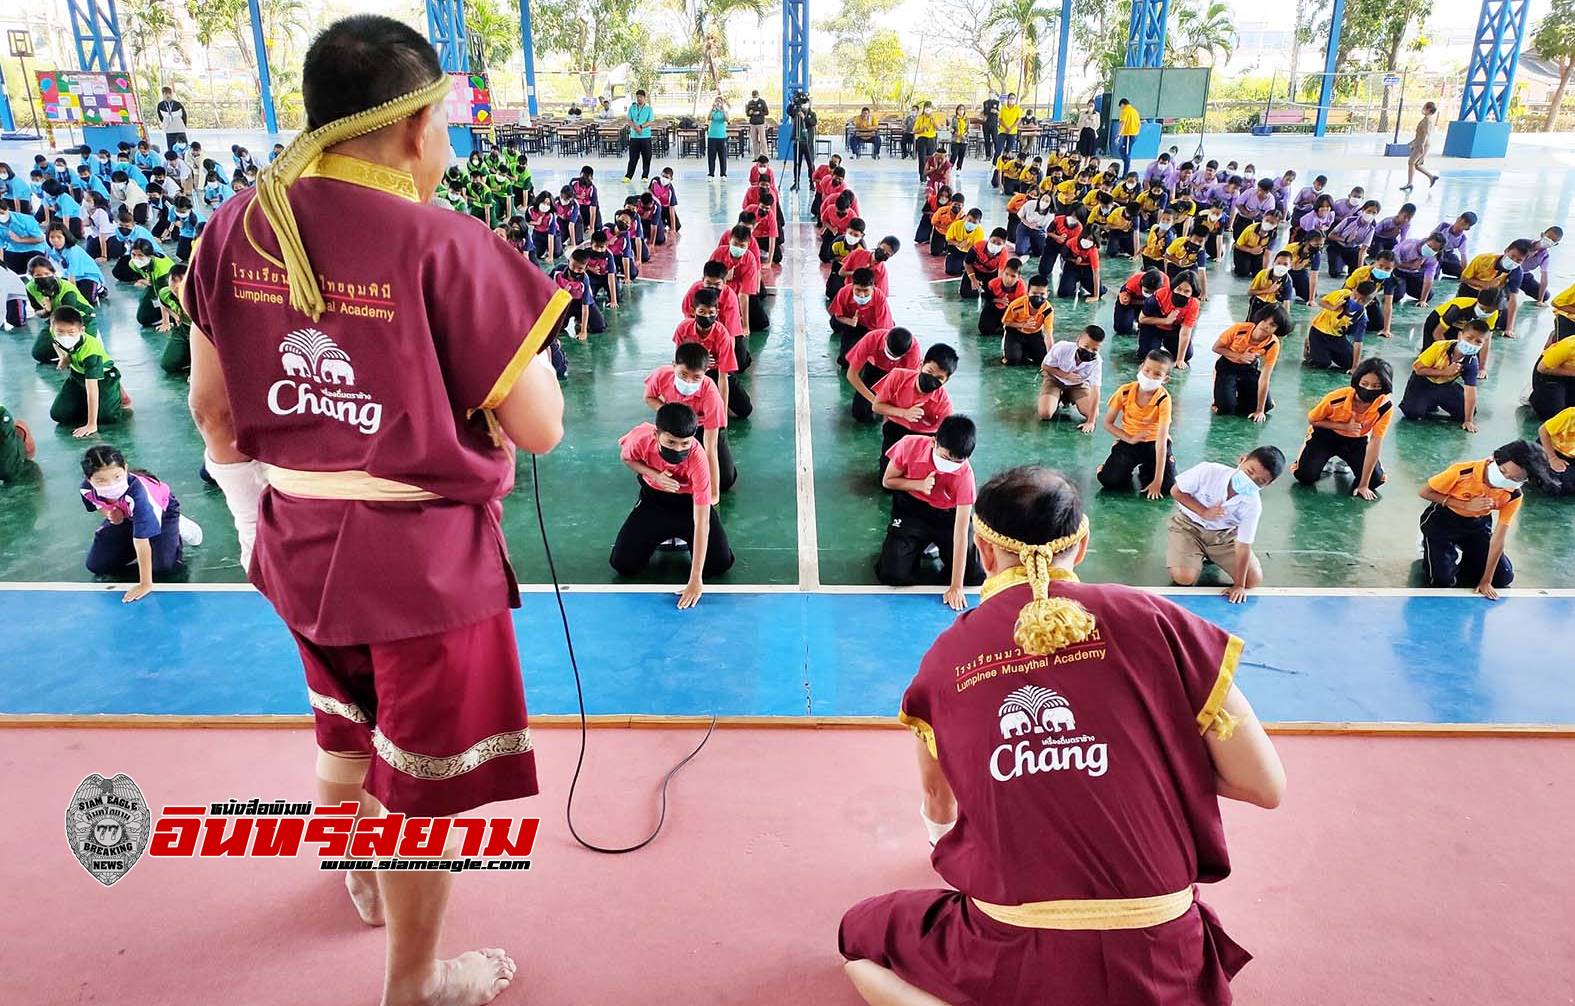 ประจวบคีรีขันธ์-เด็กหัวหินซ้อมไหว้ครูมวยไทยร่วมกับกองทัพบก เตรียมลง ‘กินเนสส์บุ๊ก’